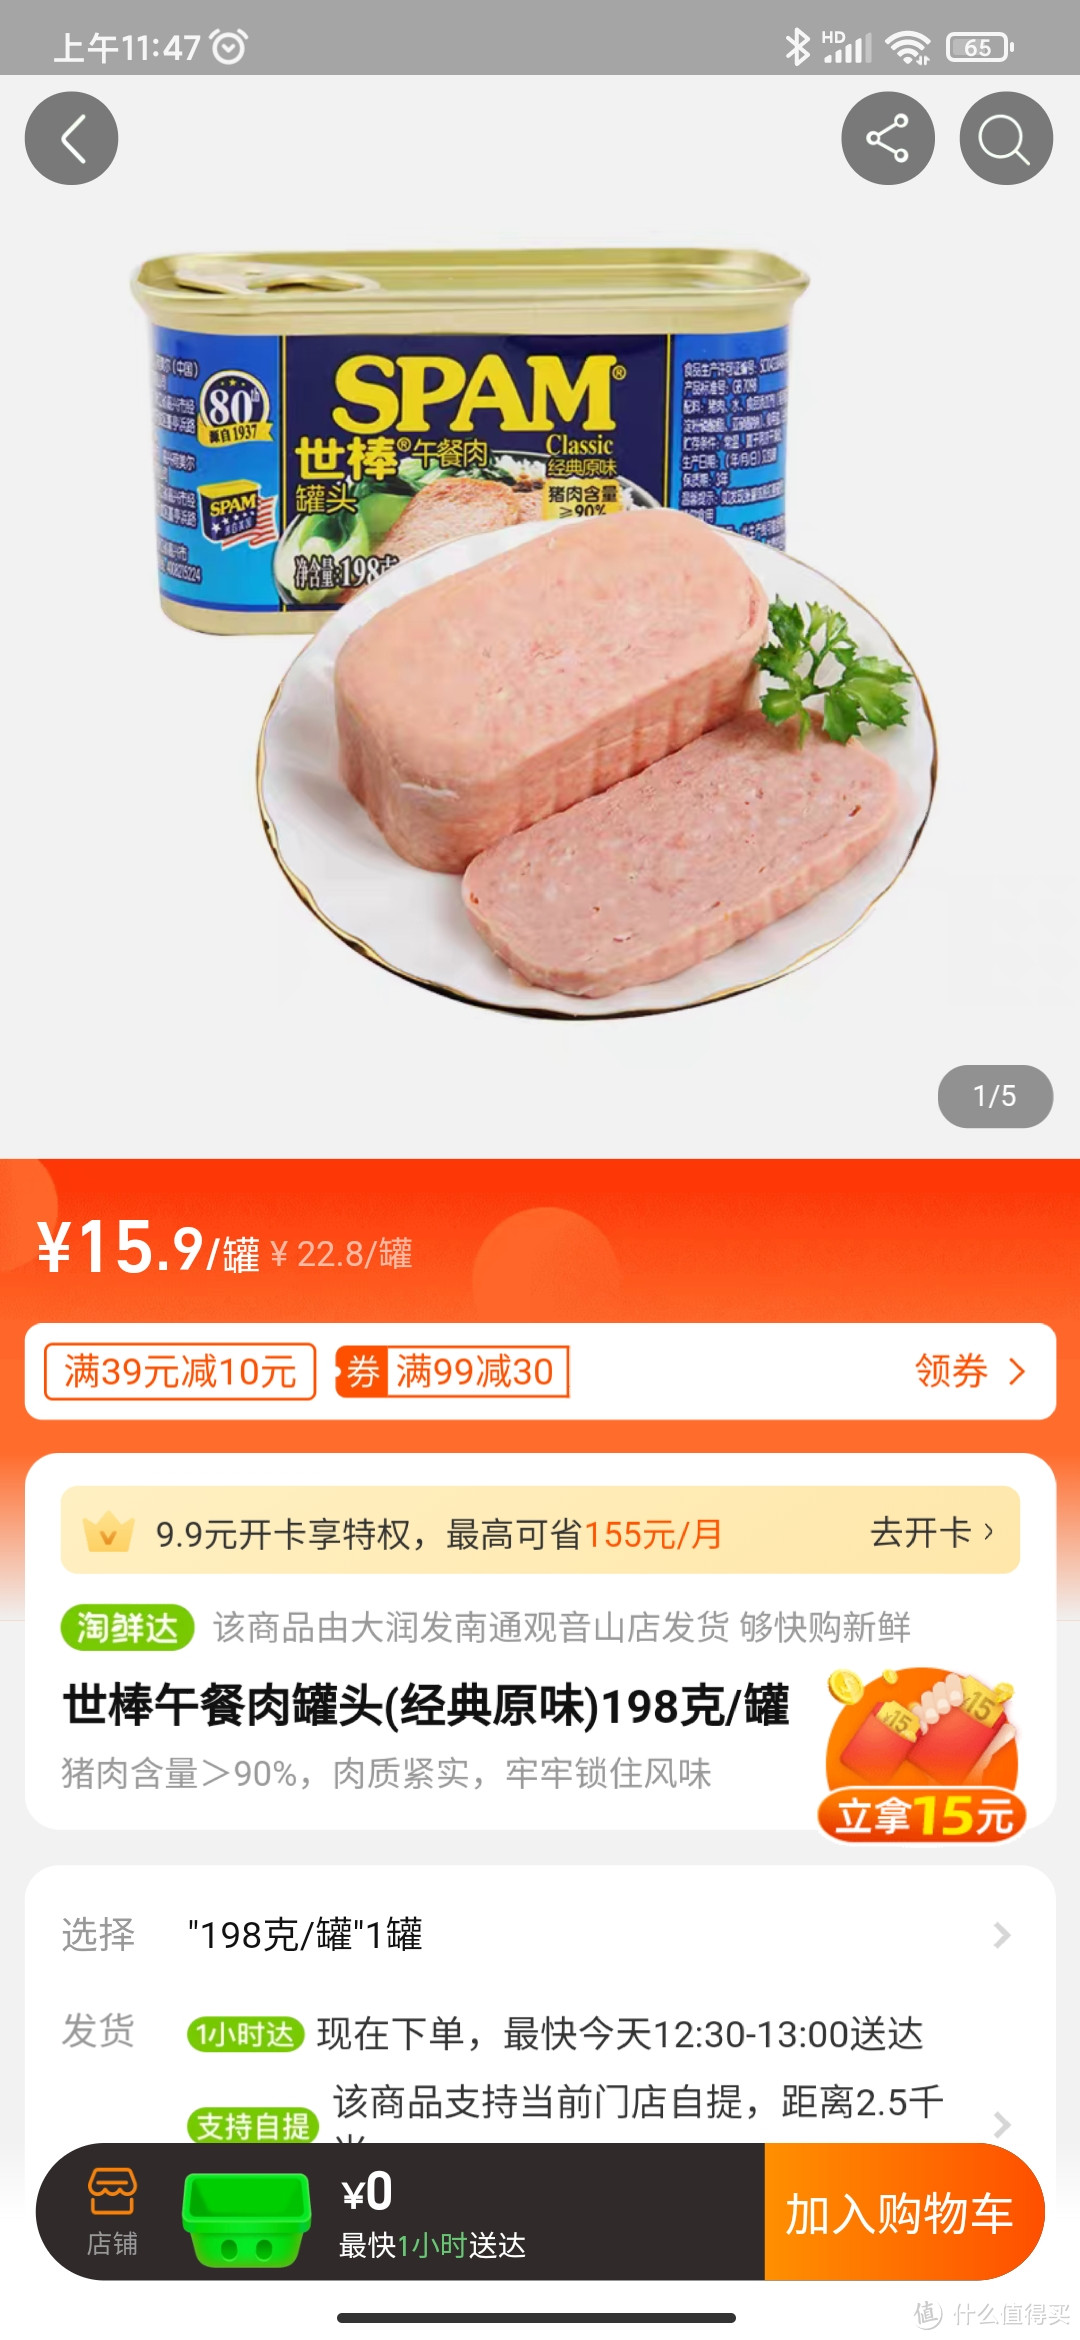 15.9元世棒午餐肉